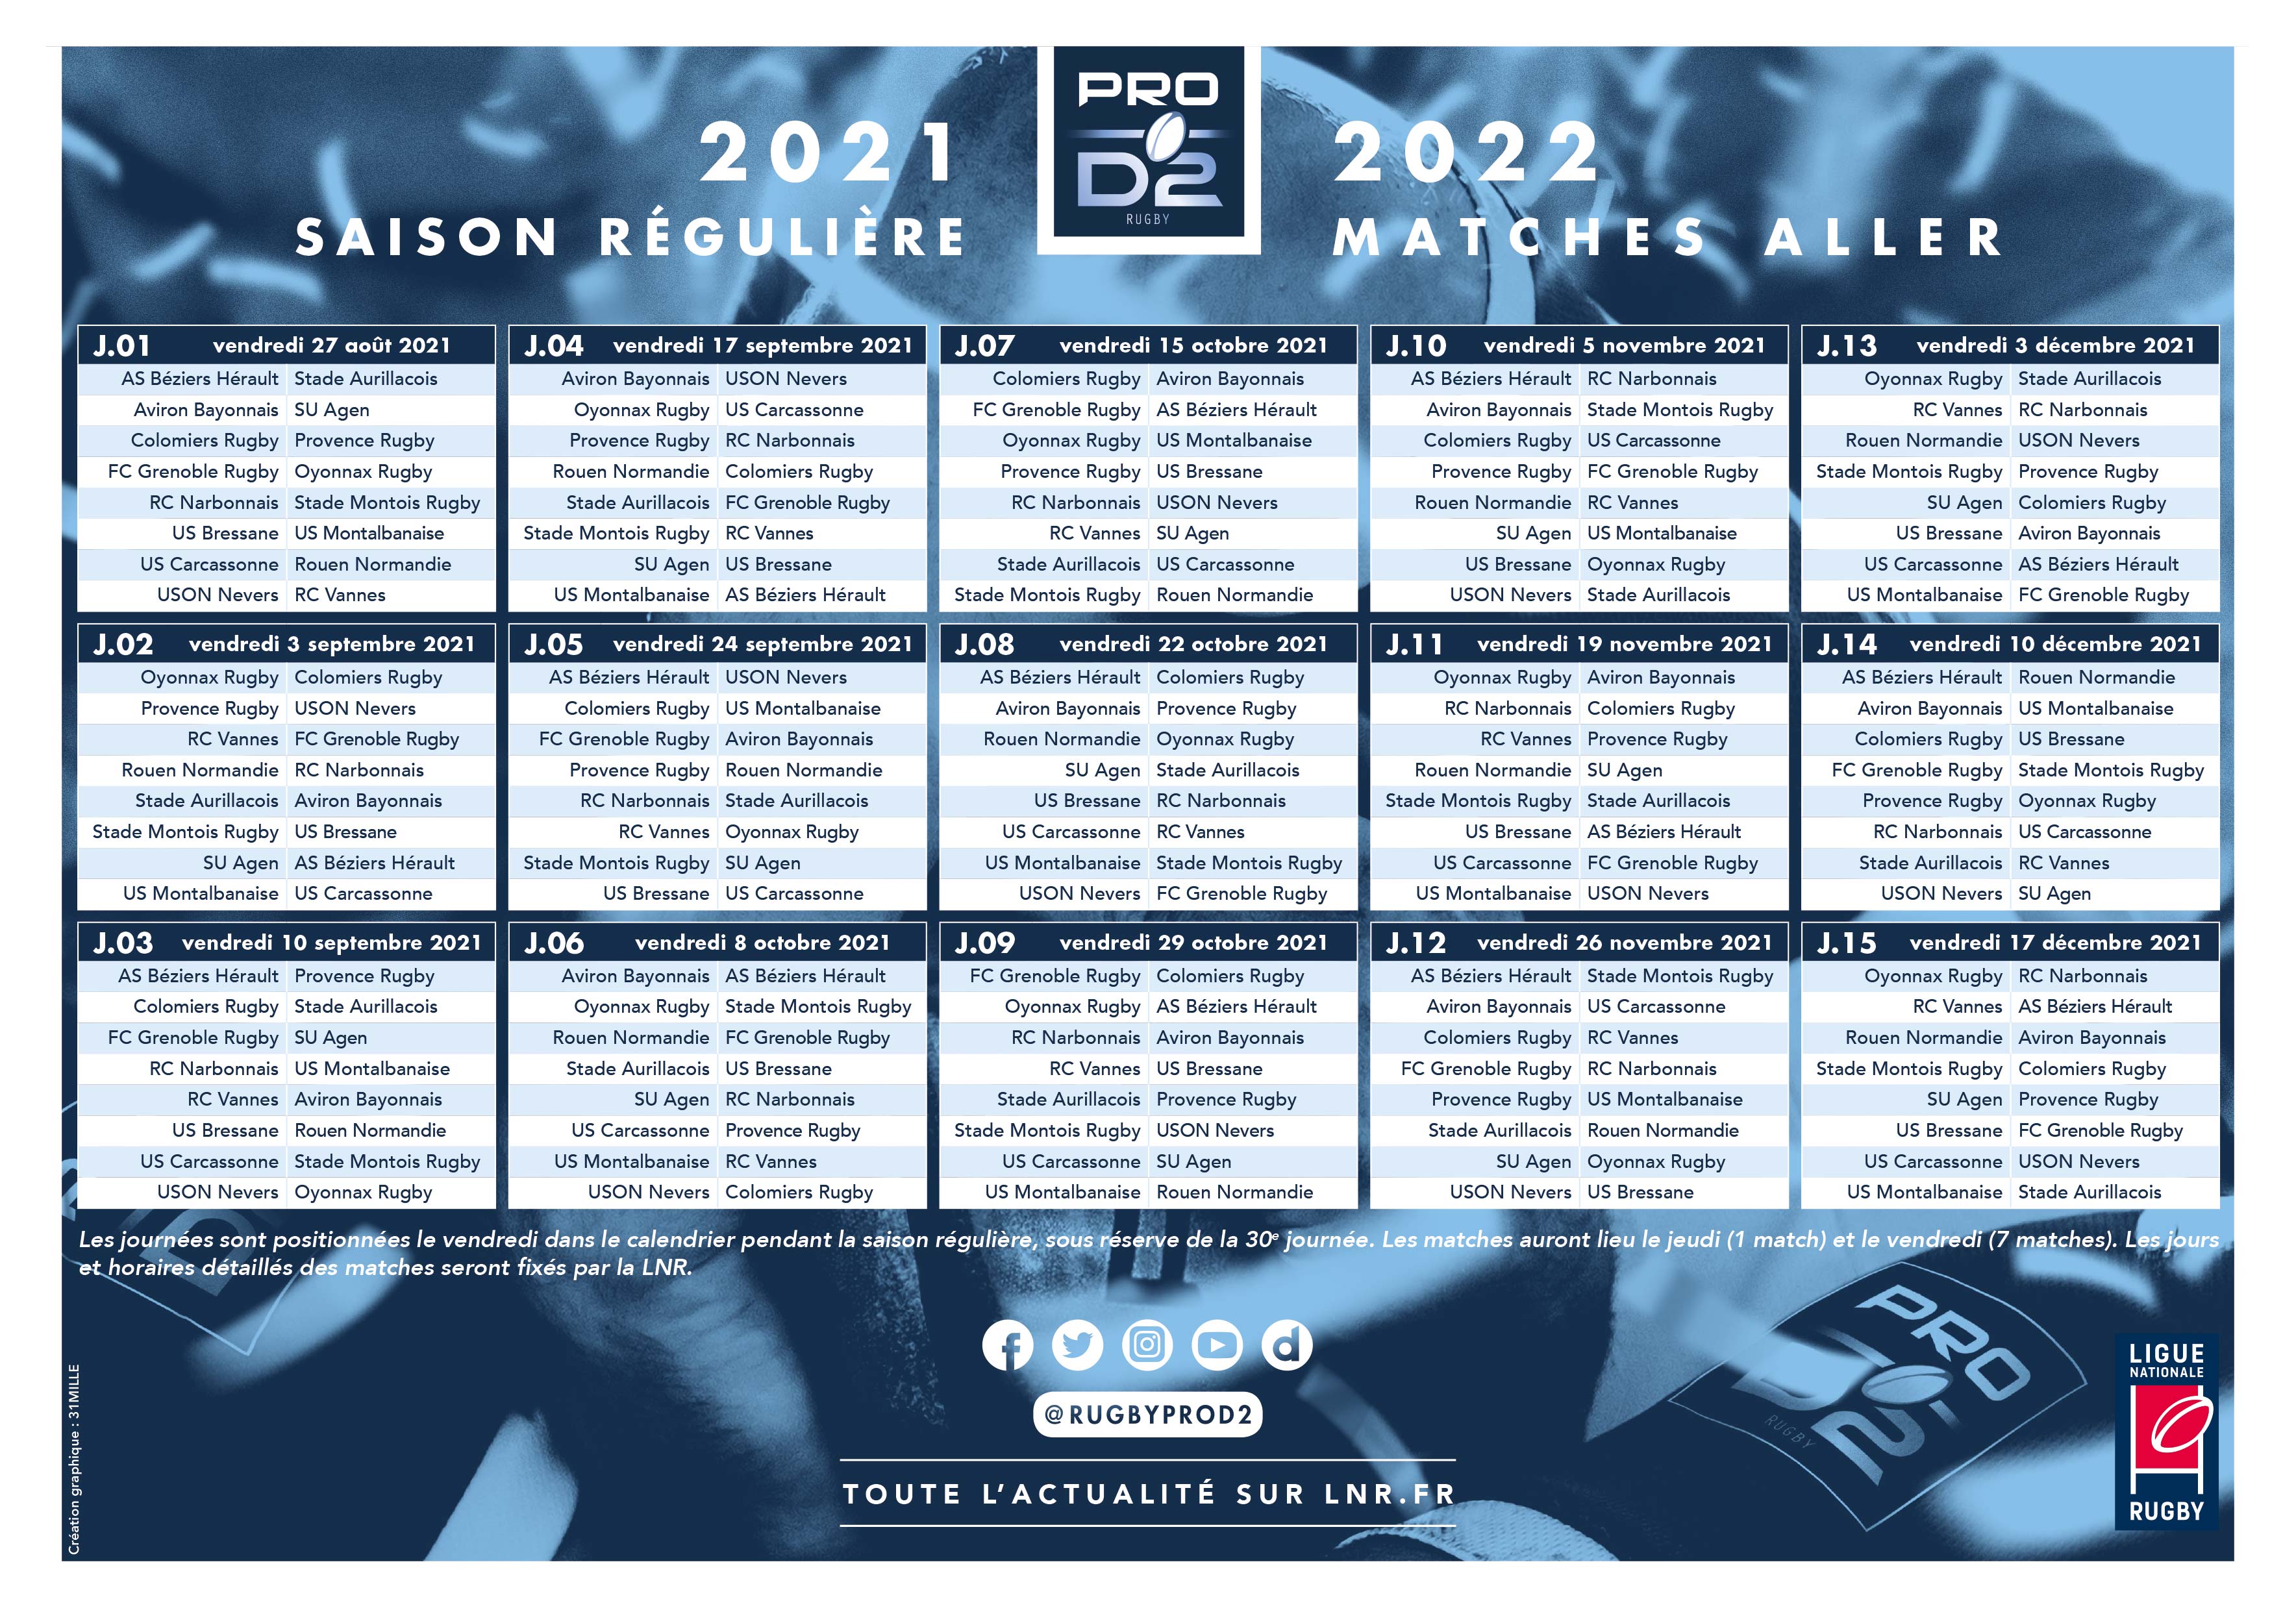 Ligue Nationale Rugby on Twitter: "#CalendrierTOP14 #CalendrierPROD2 Voici les Calendriers de la saison 2021/2022 de TOP 14 et de PRO D2 ! 🗓️ Retrouvez les infos clés et téléchargez les calendriers